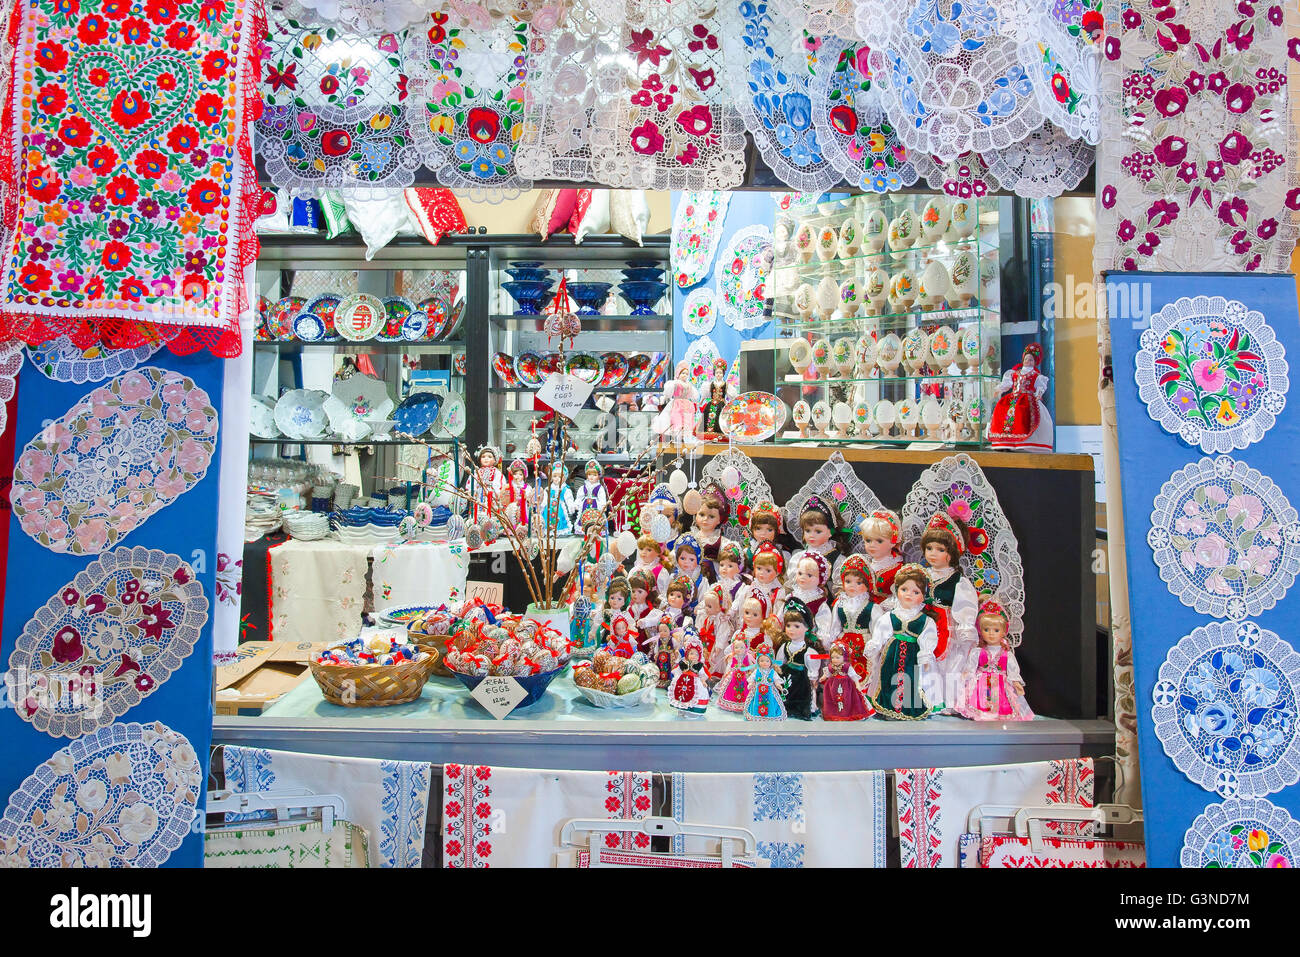 Poupées souvenirs en tenue traditionnelle hongroise dans le Grand Hall du marché dans le domaine de Jozsefvaros Budapest, Hongrie. Banque D'Images